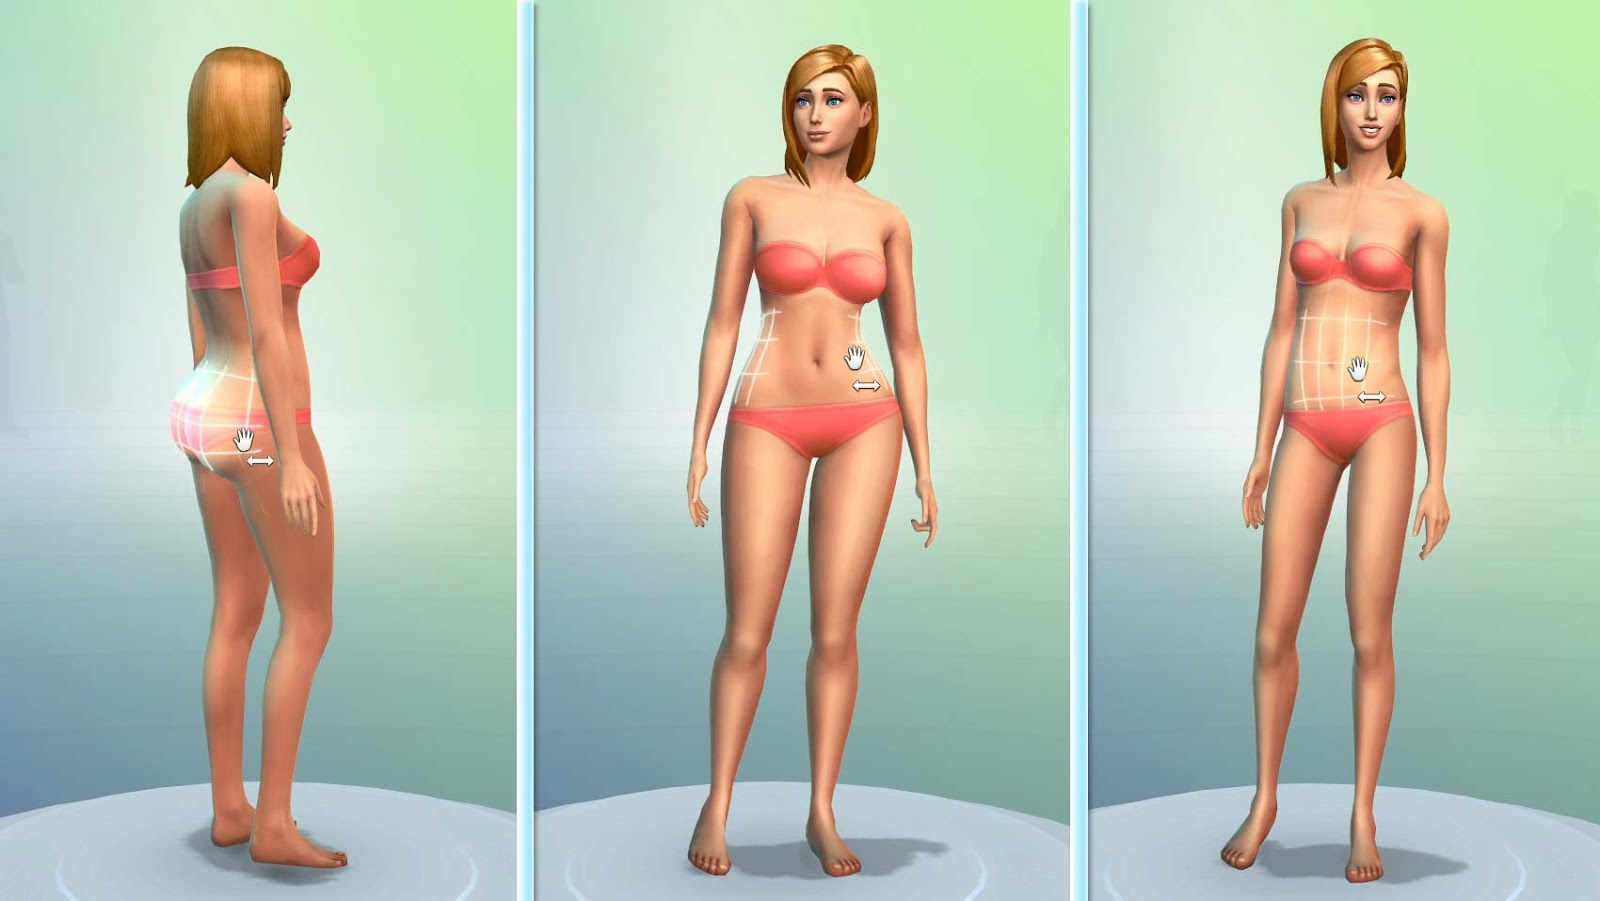 Sims 4 self harm